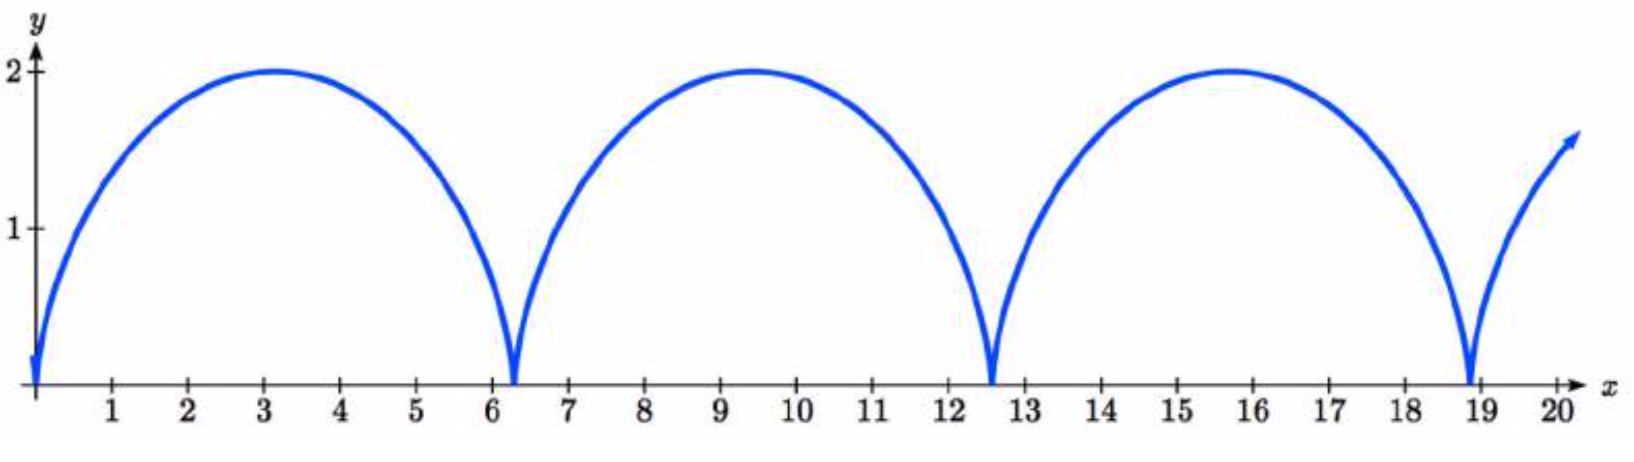 Una serie de arcos repetidos. El primero comienza en el origen, se curva cóncavo hacia abajo hasta pi coma 2, luego se curva cóncavo hacia abajo a pi coma 0. Esa misma forma se repite dos veces más.